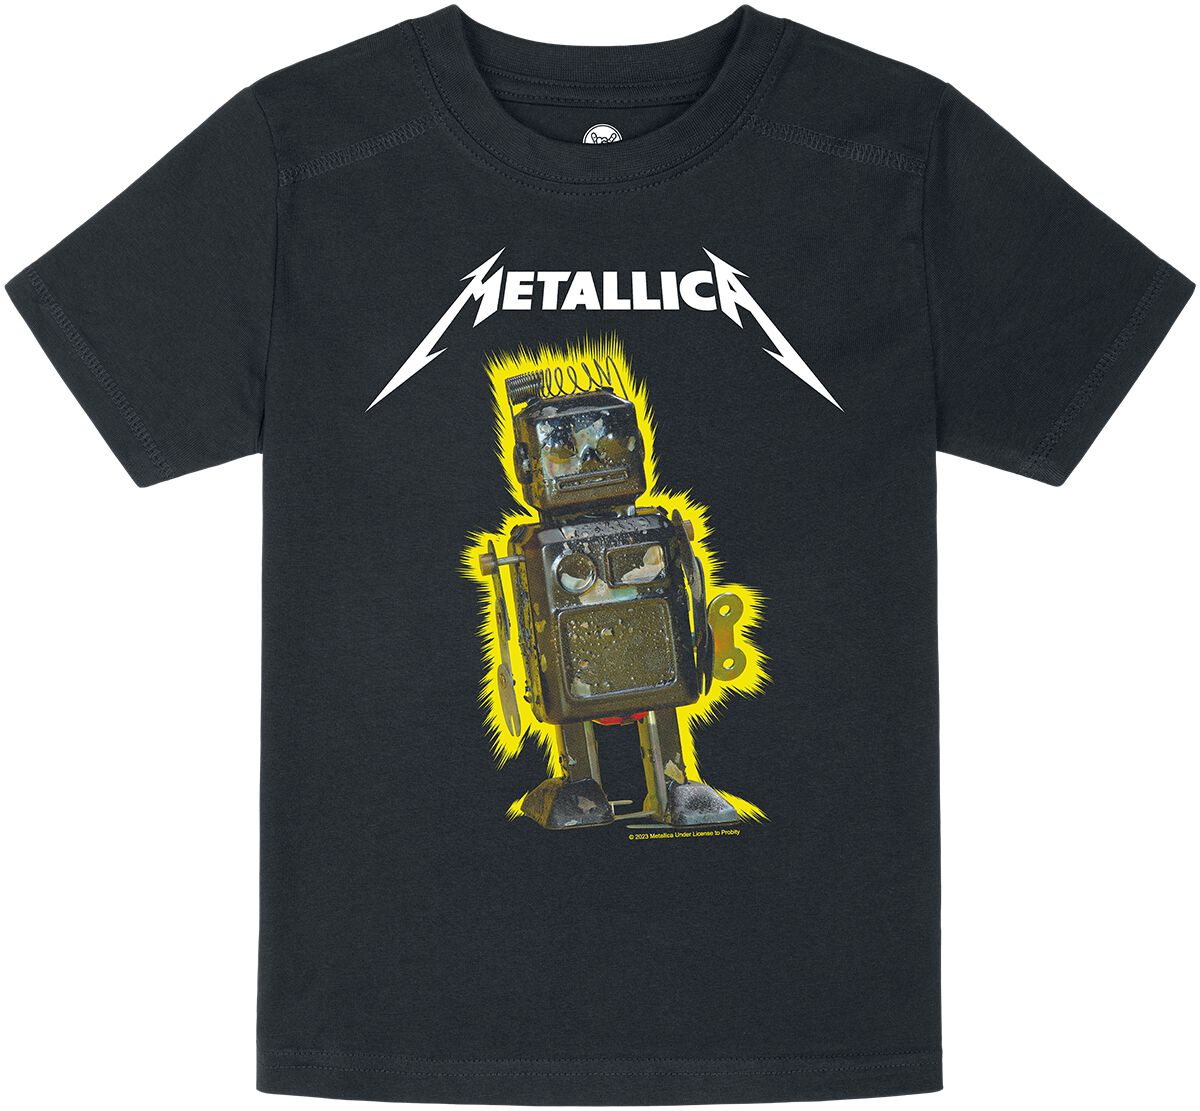 Metallica T-Shirt für Kleinkinder - Metal-Kids - Robot Blast - für Mädchen & Jungen - schwarz  - Lizenziertes Merchandise!